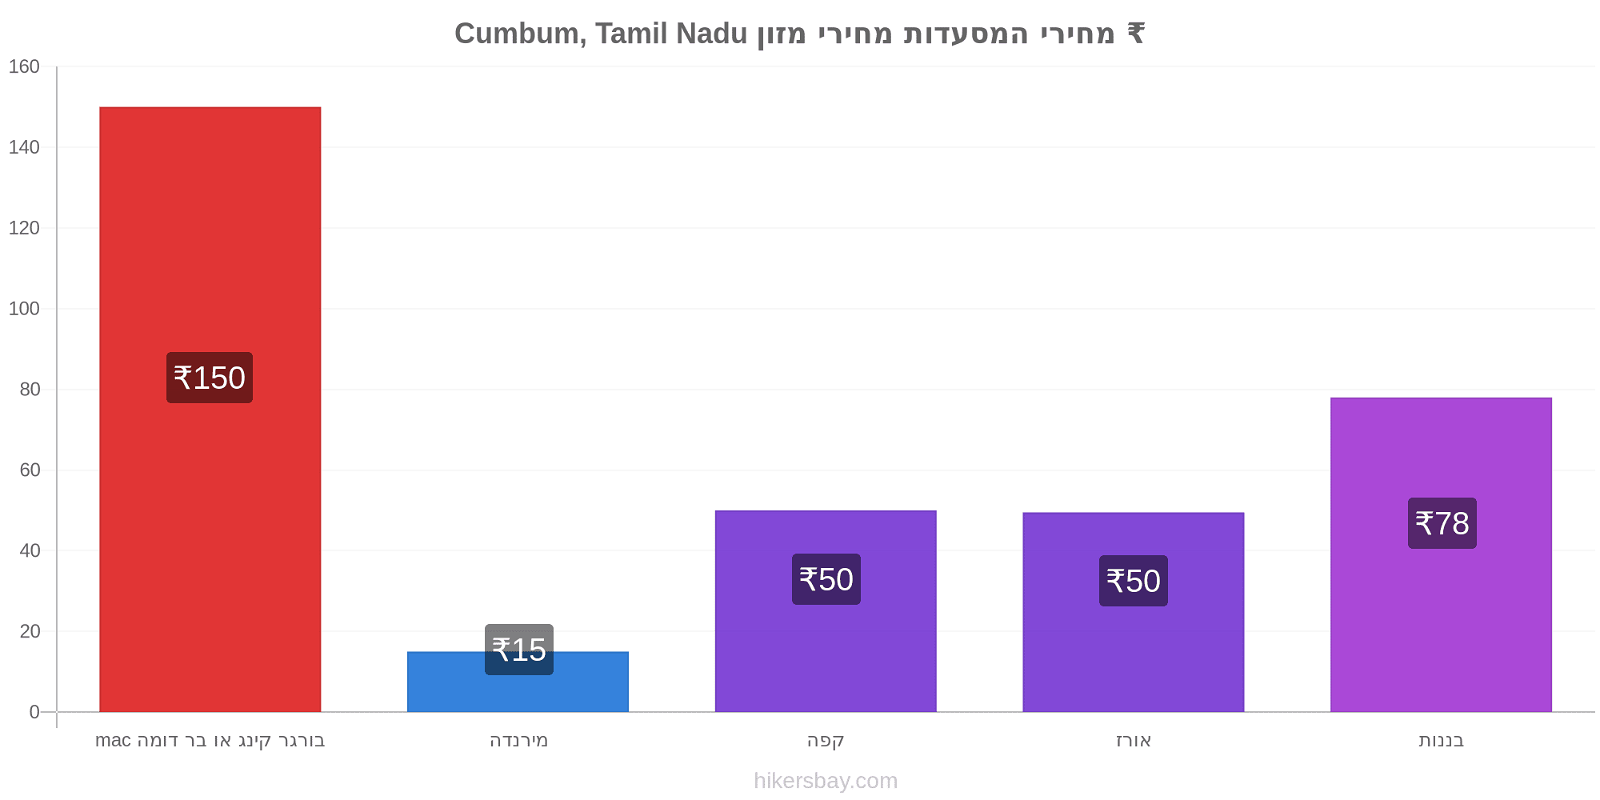 Cumbum, Tamil Nadu שינויי מחיר hikersbay.com